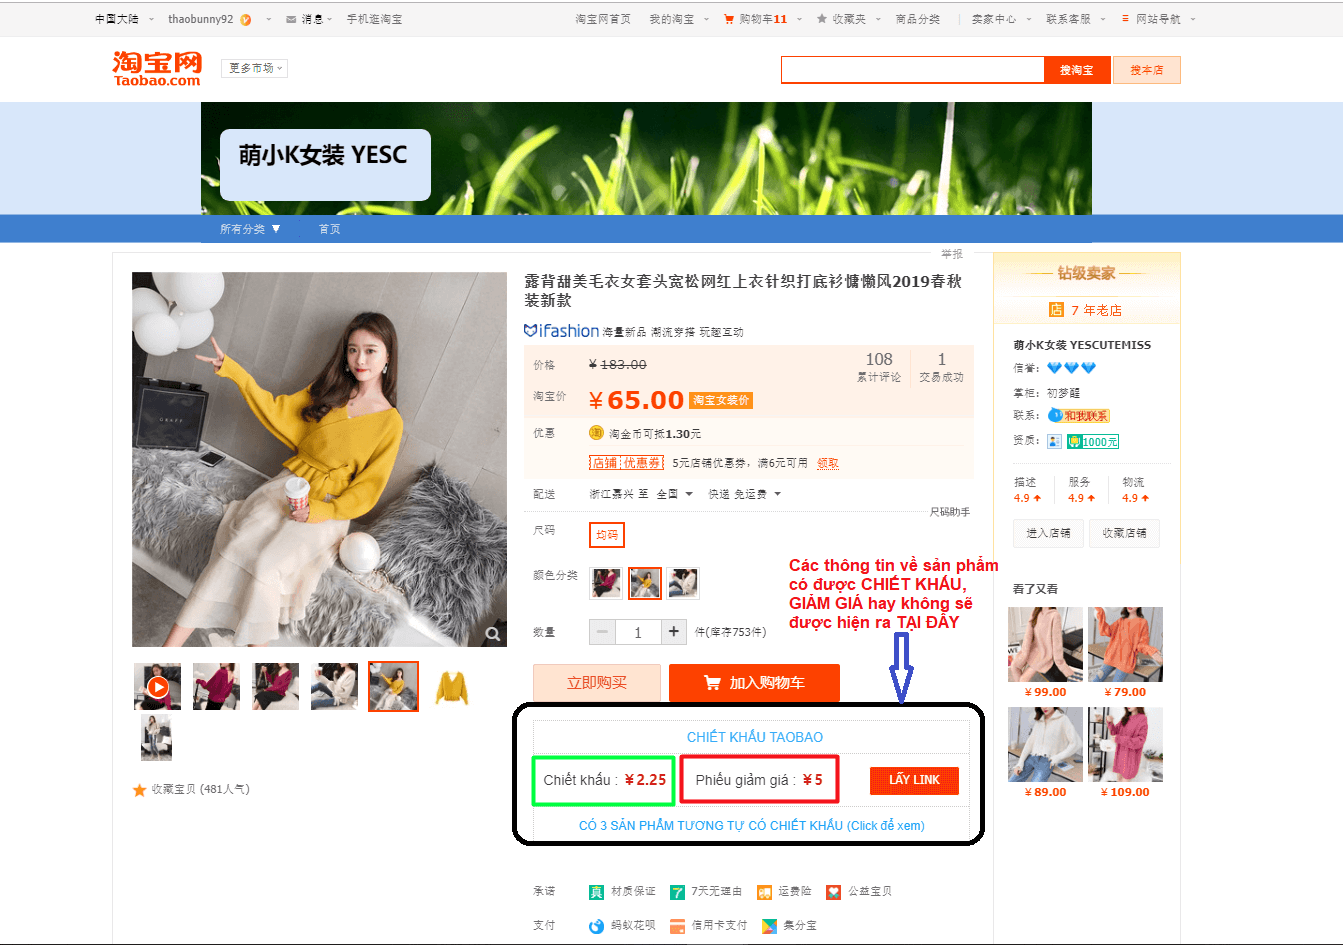 Xem chiết khấu trên Taobao